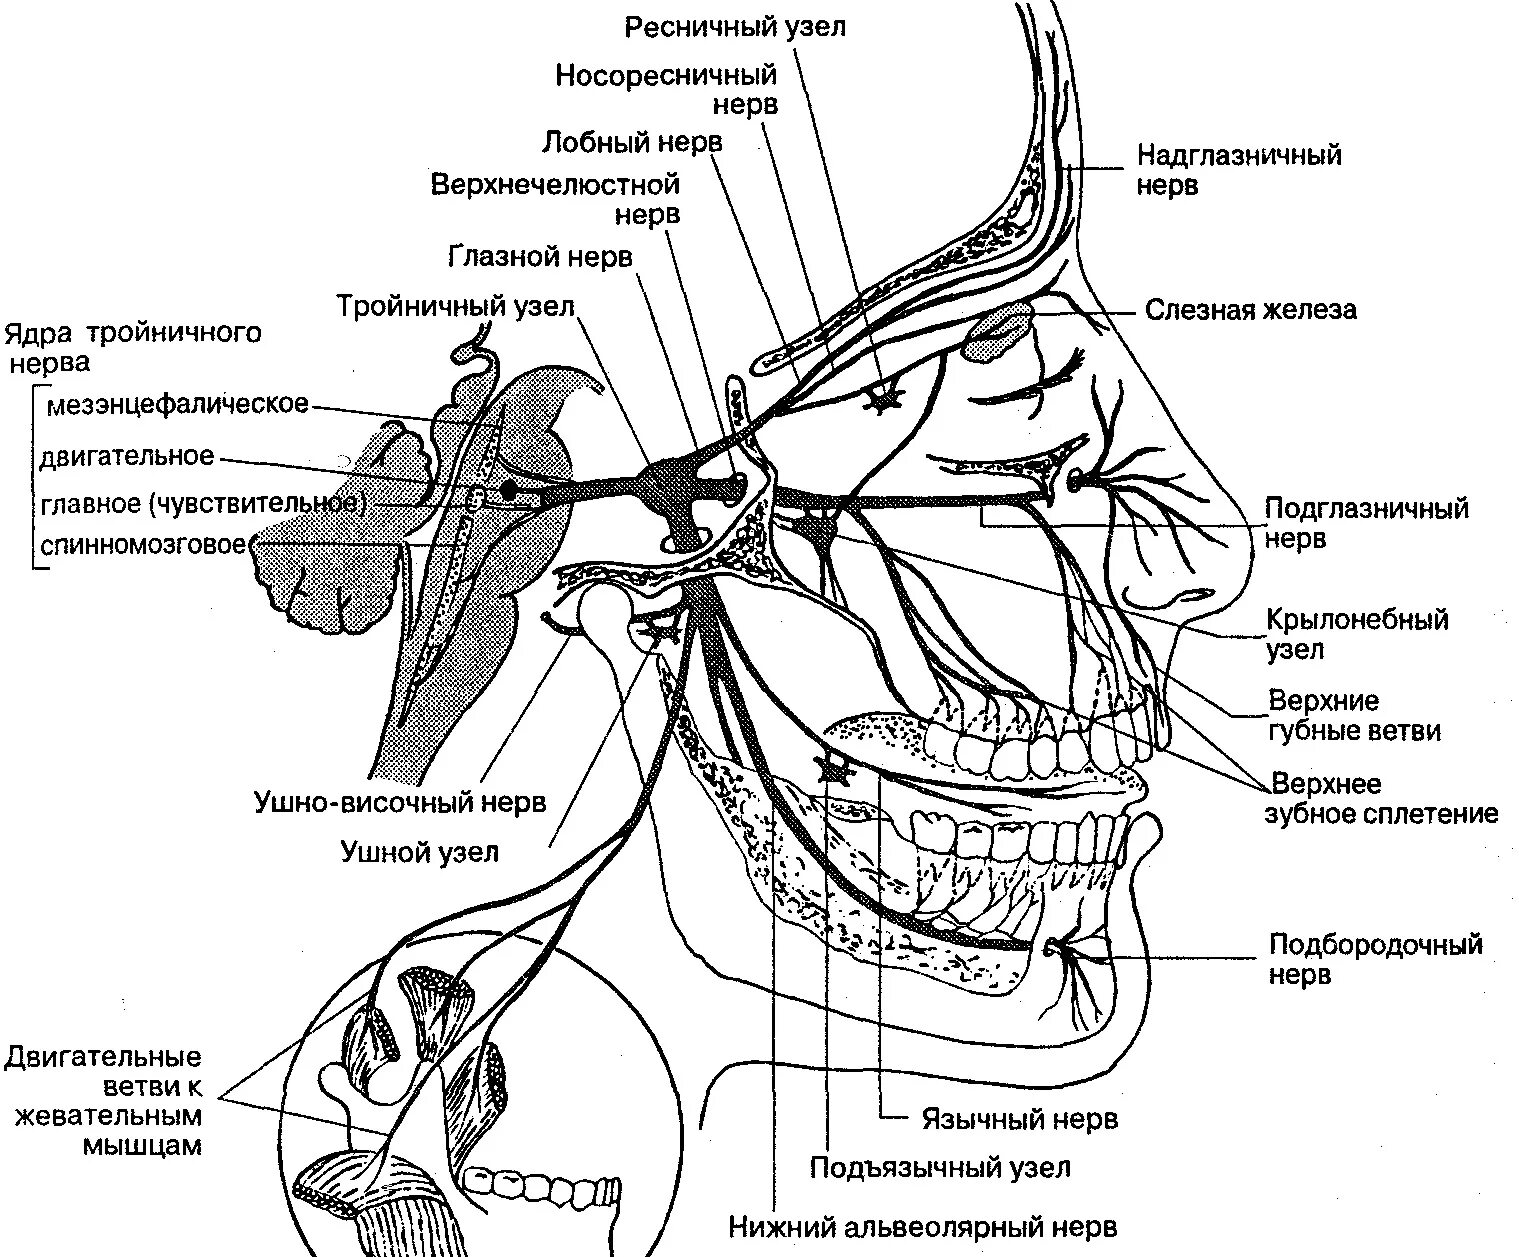 Волокна лицевого нерва. Ветви тройничного нерва анатомия. Схема проекции ветвей тройничного нерва. Иннервация тройничного нерва схема. Узлы тройничного нерва анатомия.